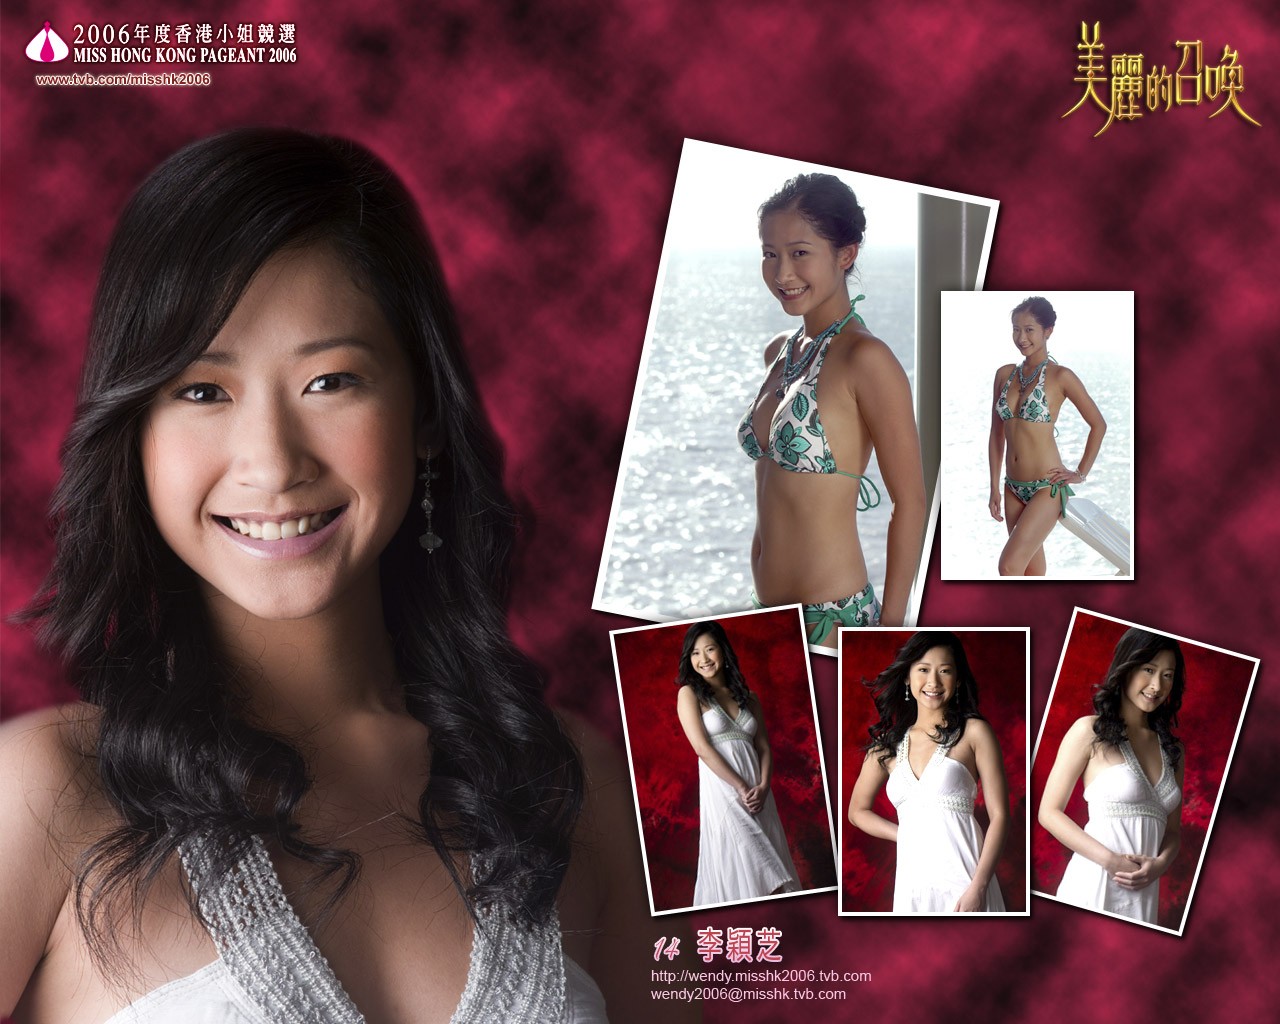 Miss Hong Kong 2006 Album #3 - 1280x1024